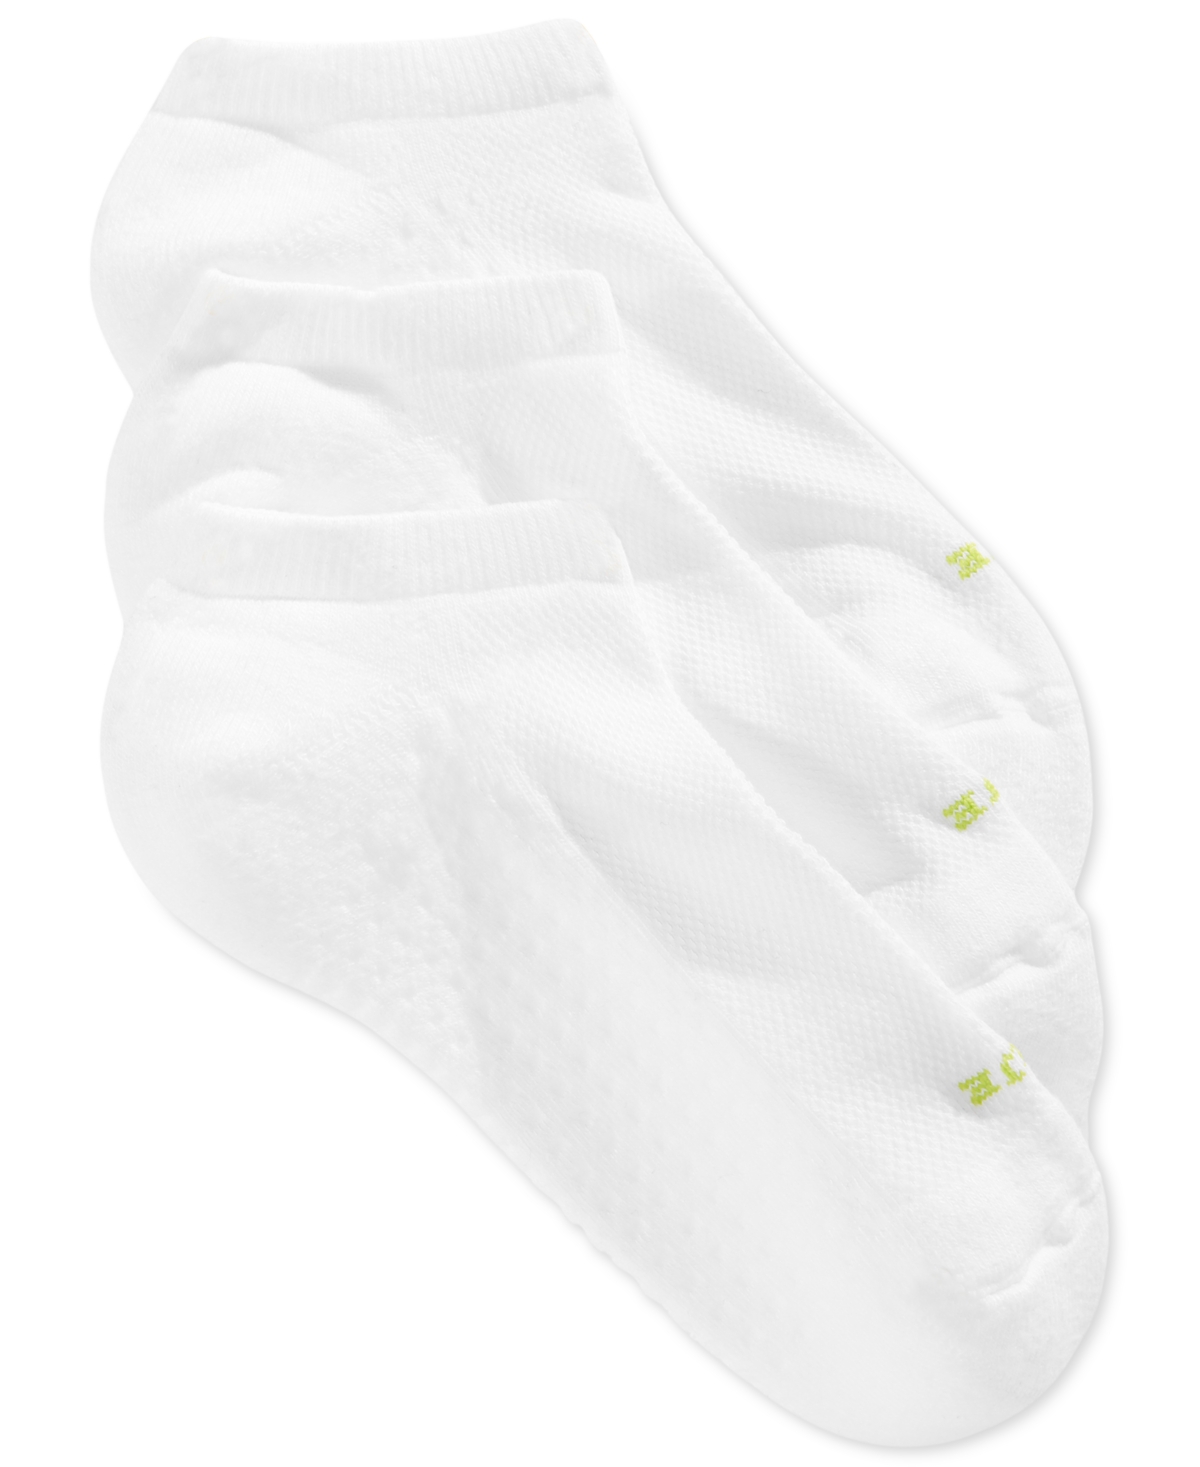 Women's Air Cushion No Show 3 Pack Socks - White